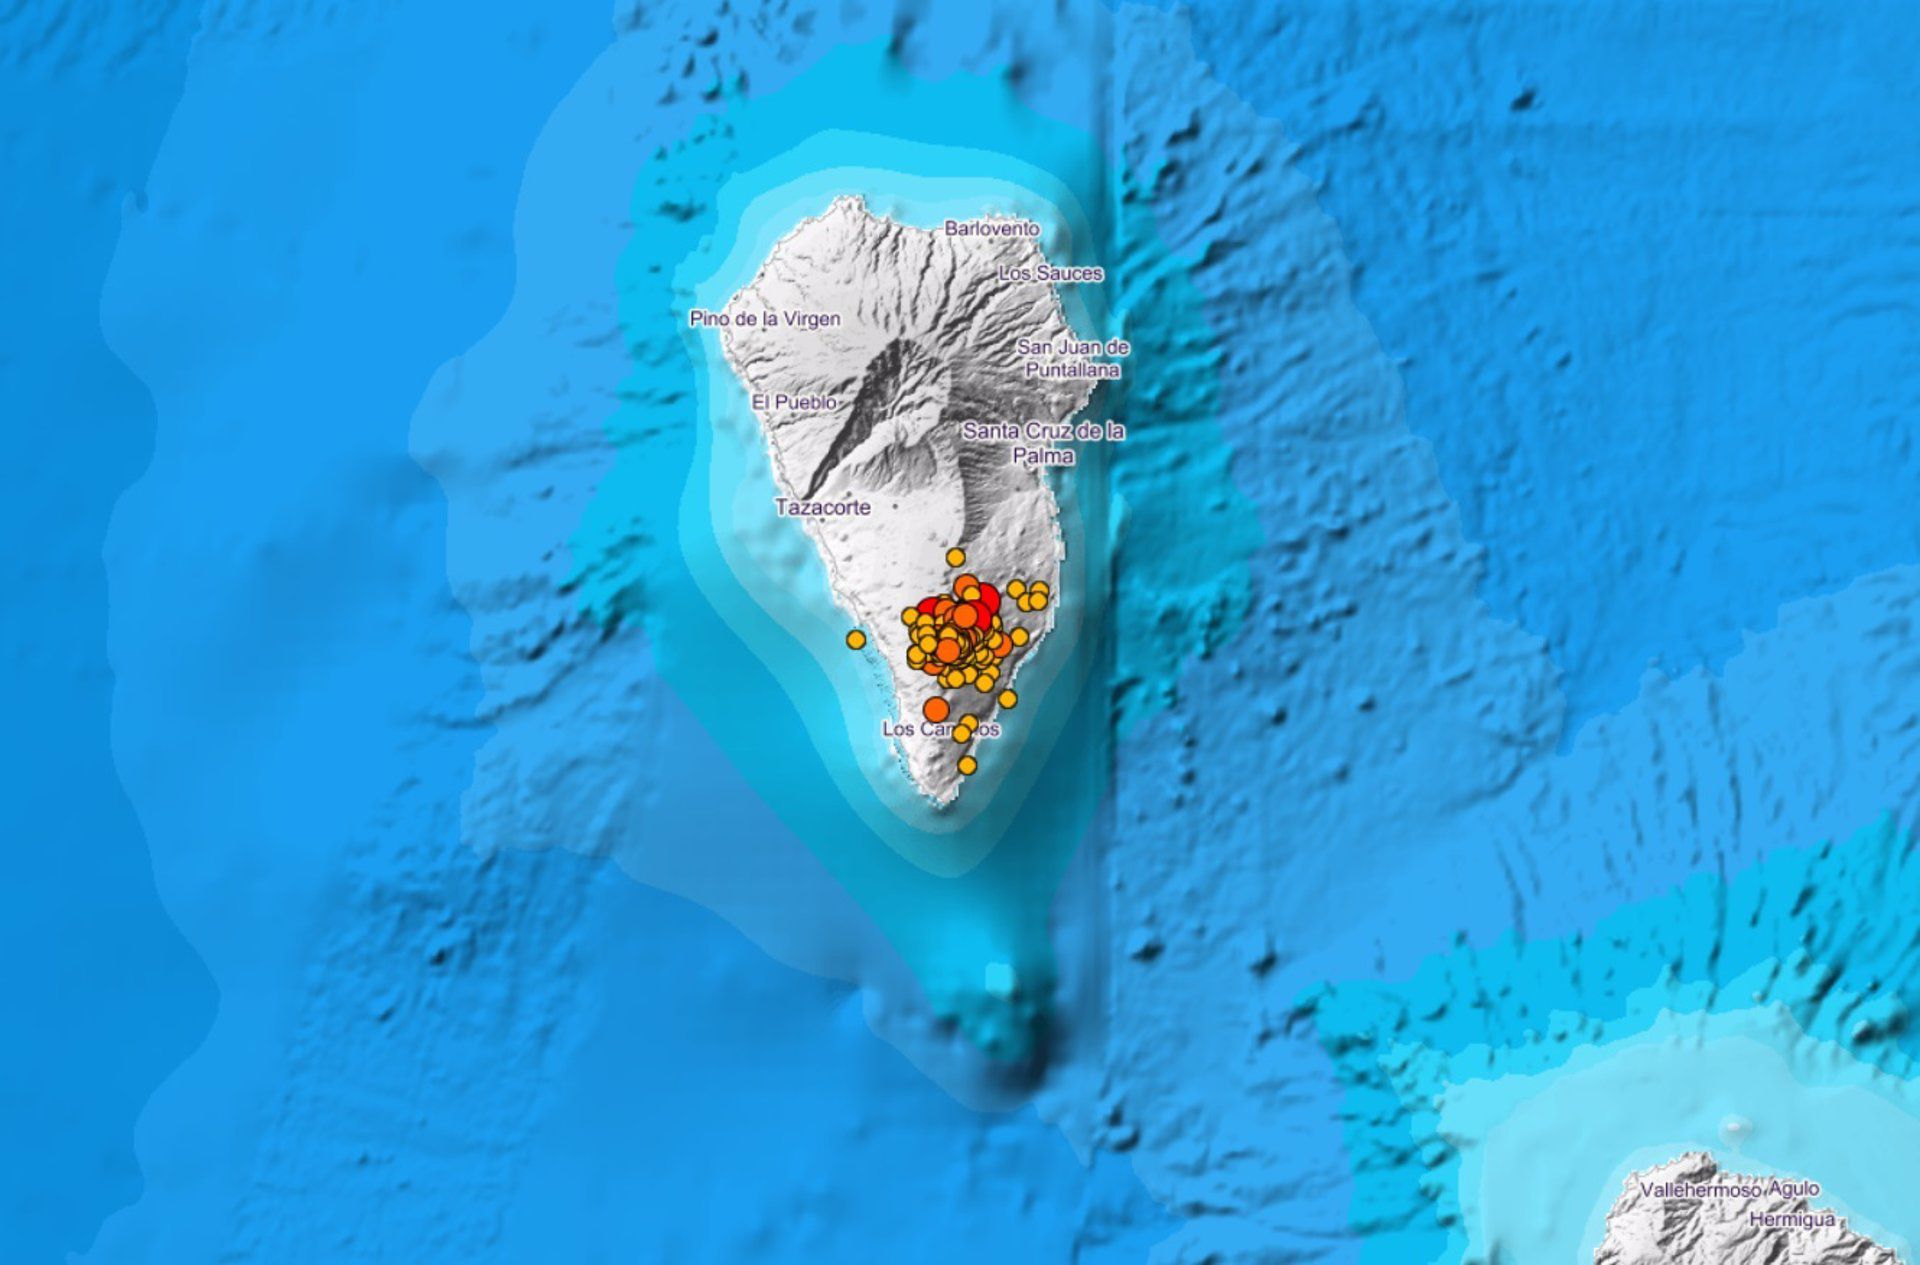 Ayer se produjo el terremoto de mayor magnitud hasta el momento en La Palma: 4,8